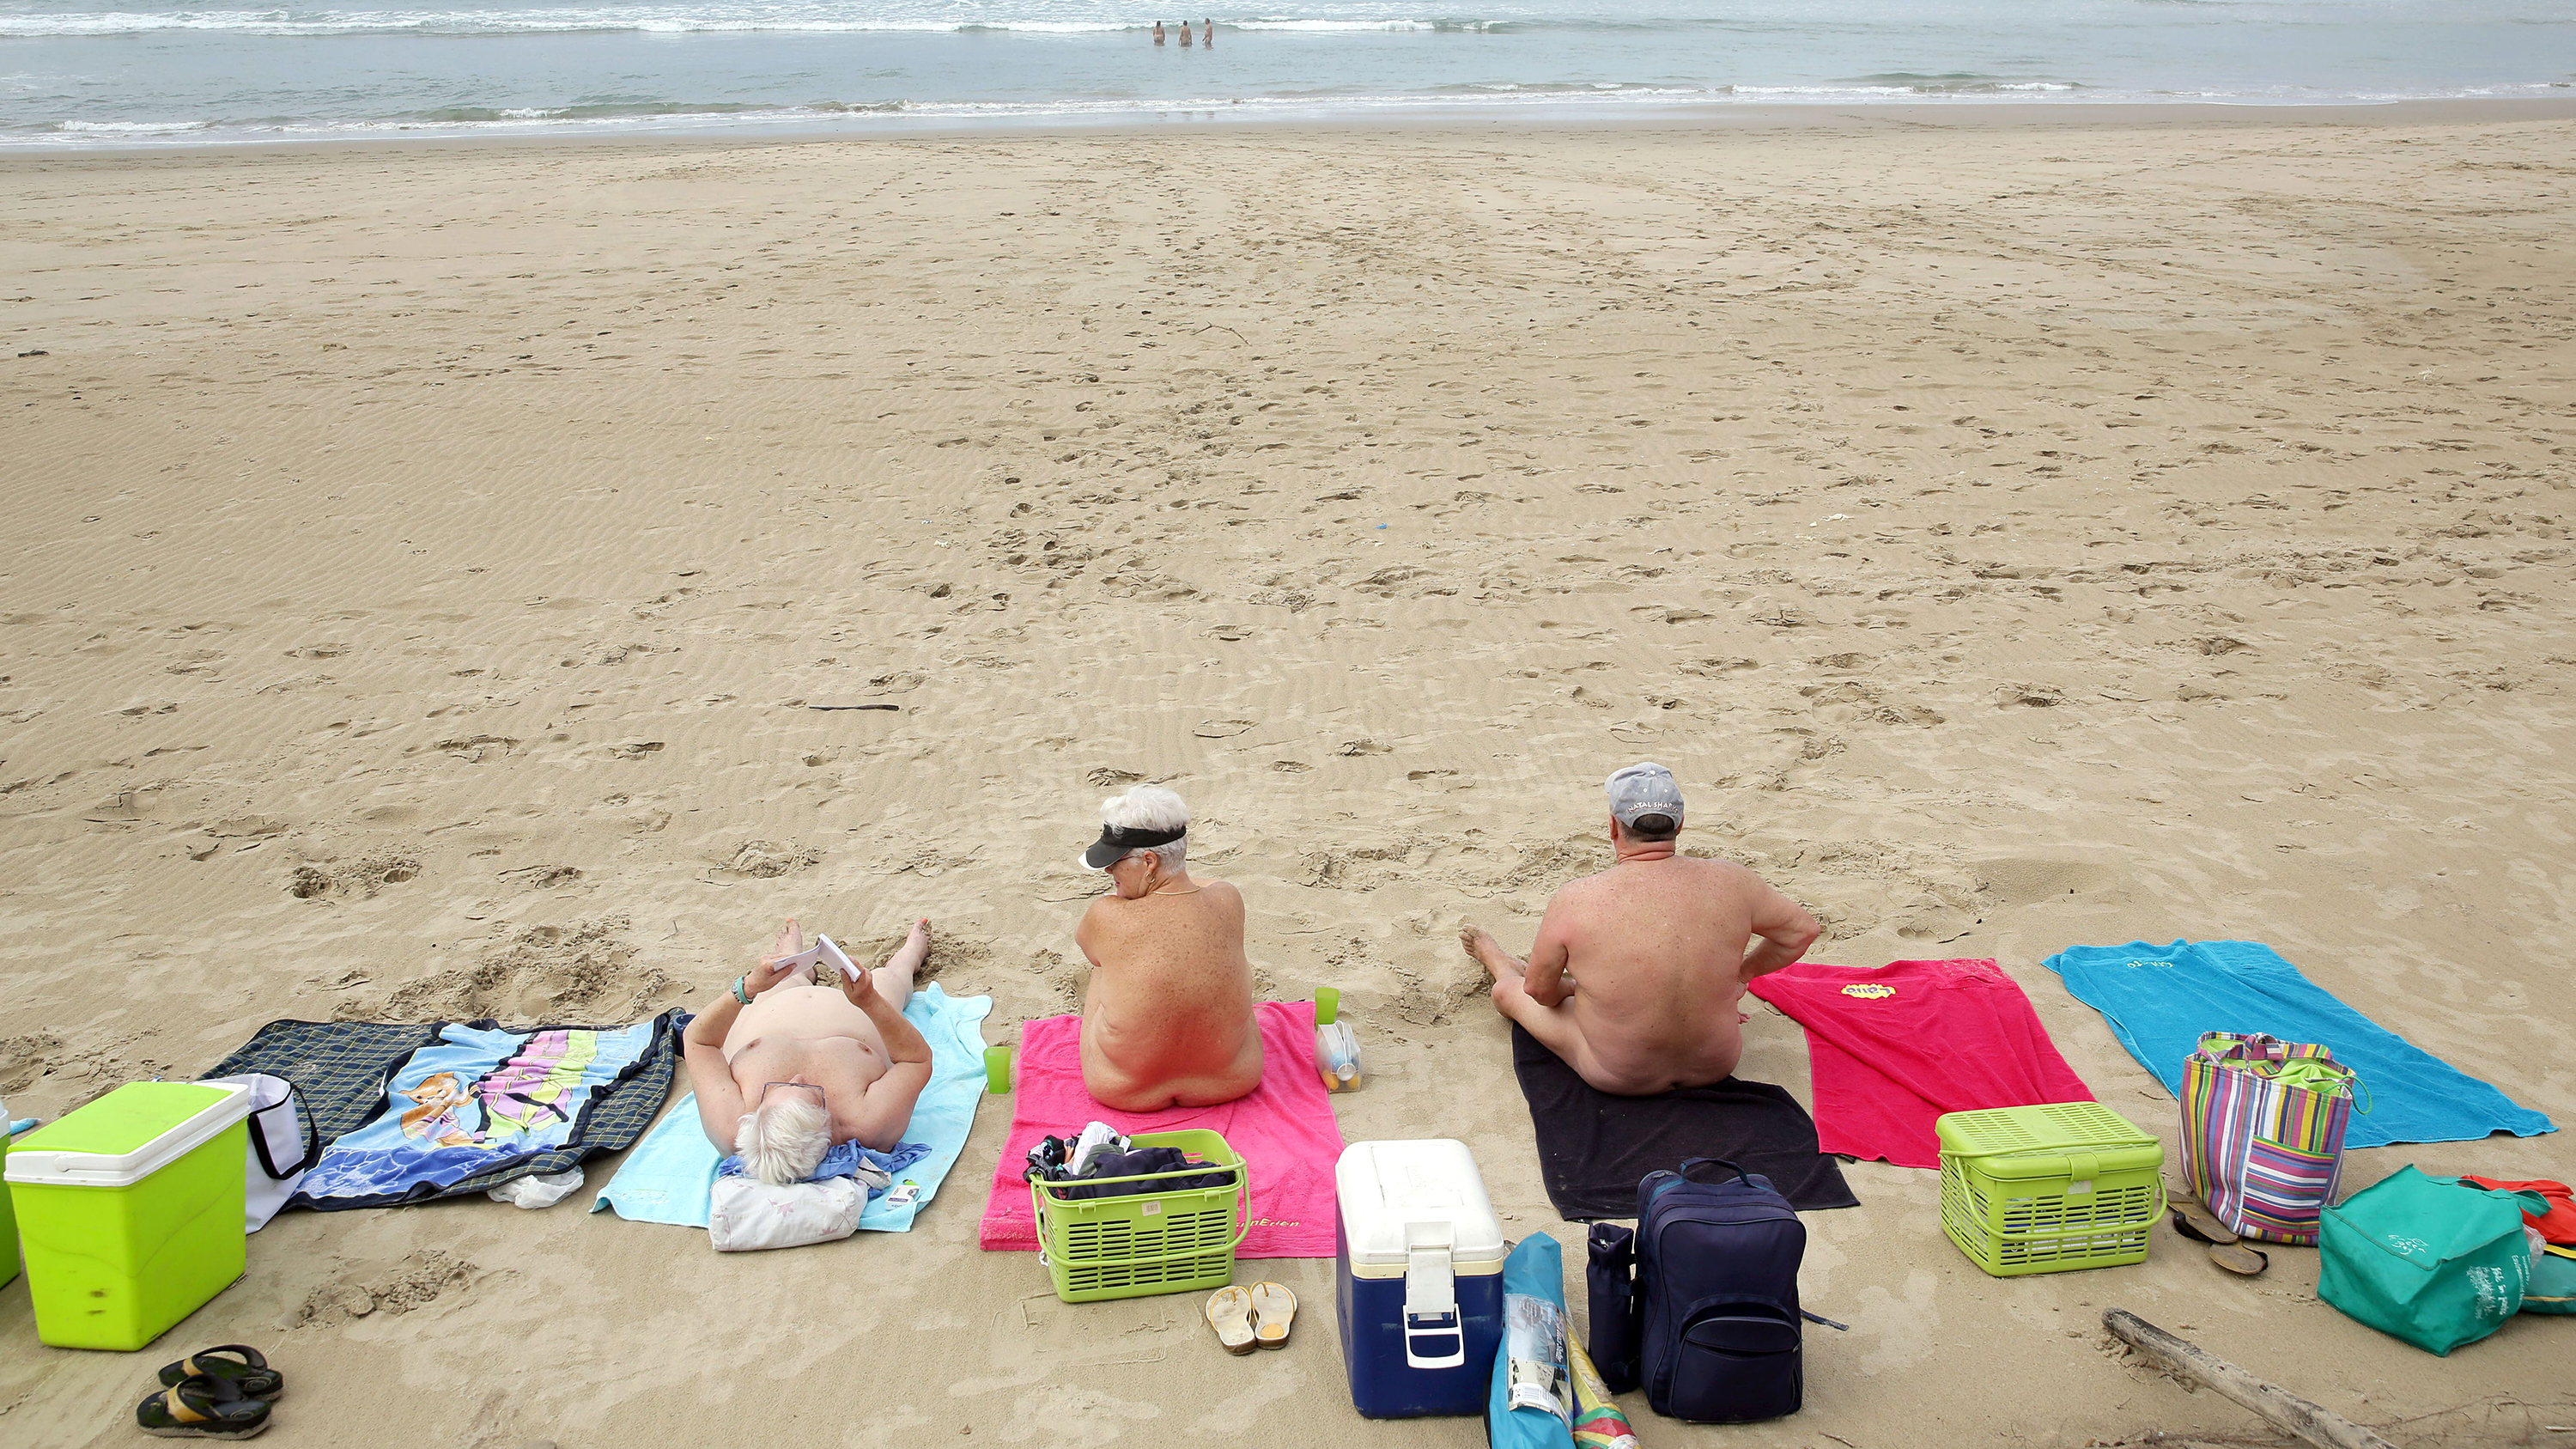 Skinny Mature Nude On Beach